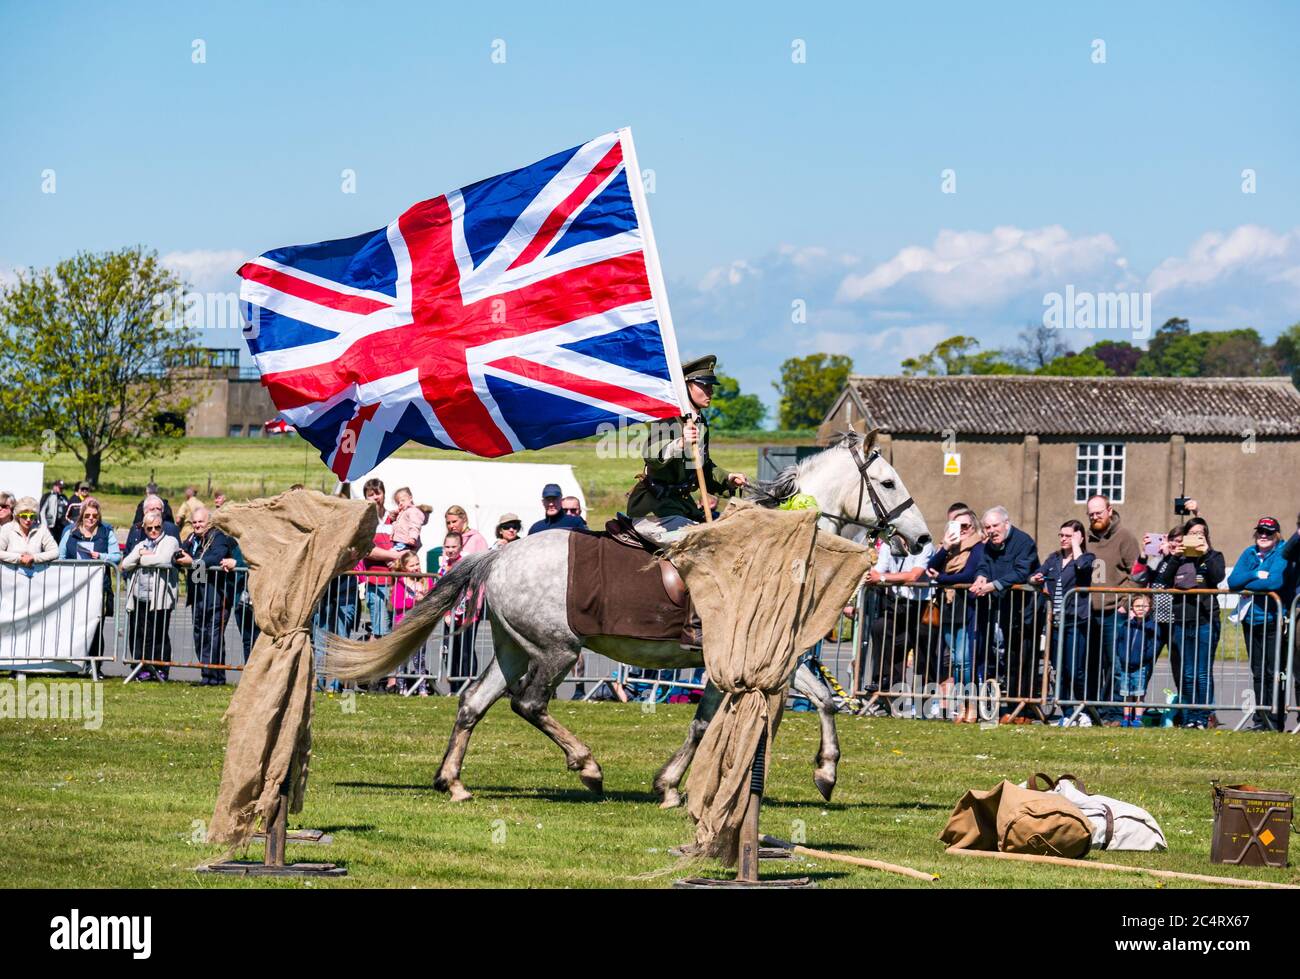 Les amis d'Onno équipe de cascades équestres avec un soldat à cheval portant un grand drapeau de l'Union Jack, événement de guerre, Fortune est, Lothian est, Écosse Banque D'Images